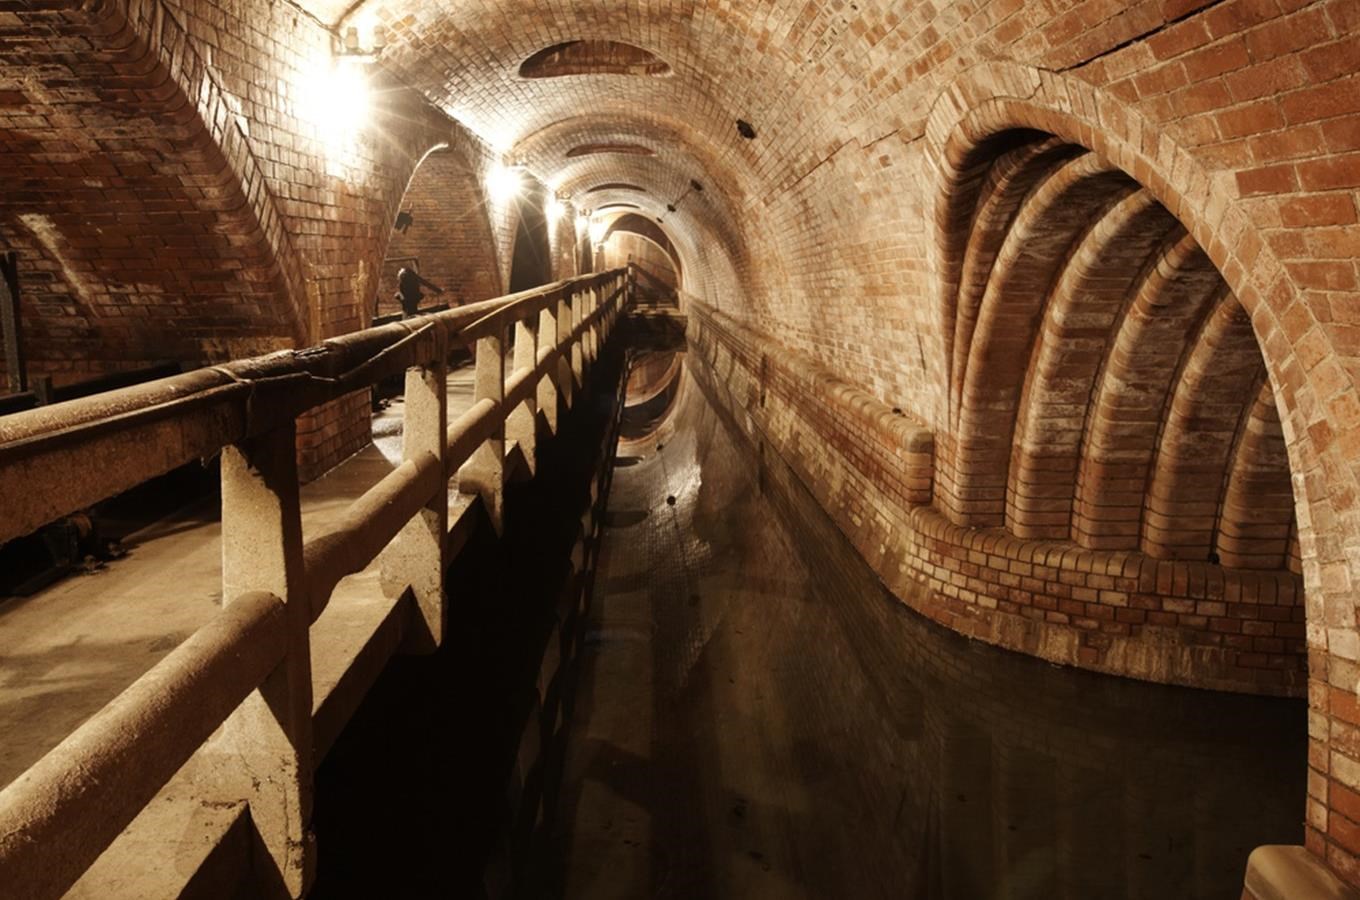 Zalezte si na den pod zem - objevte neznámé podzemí Prahy!